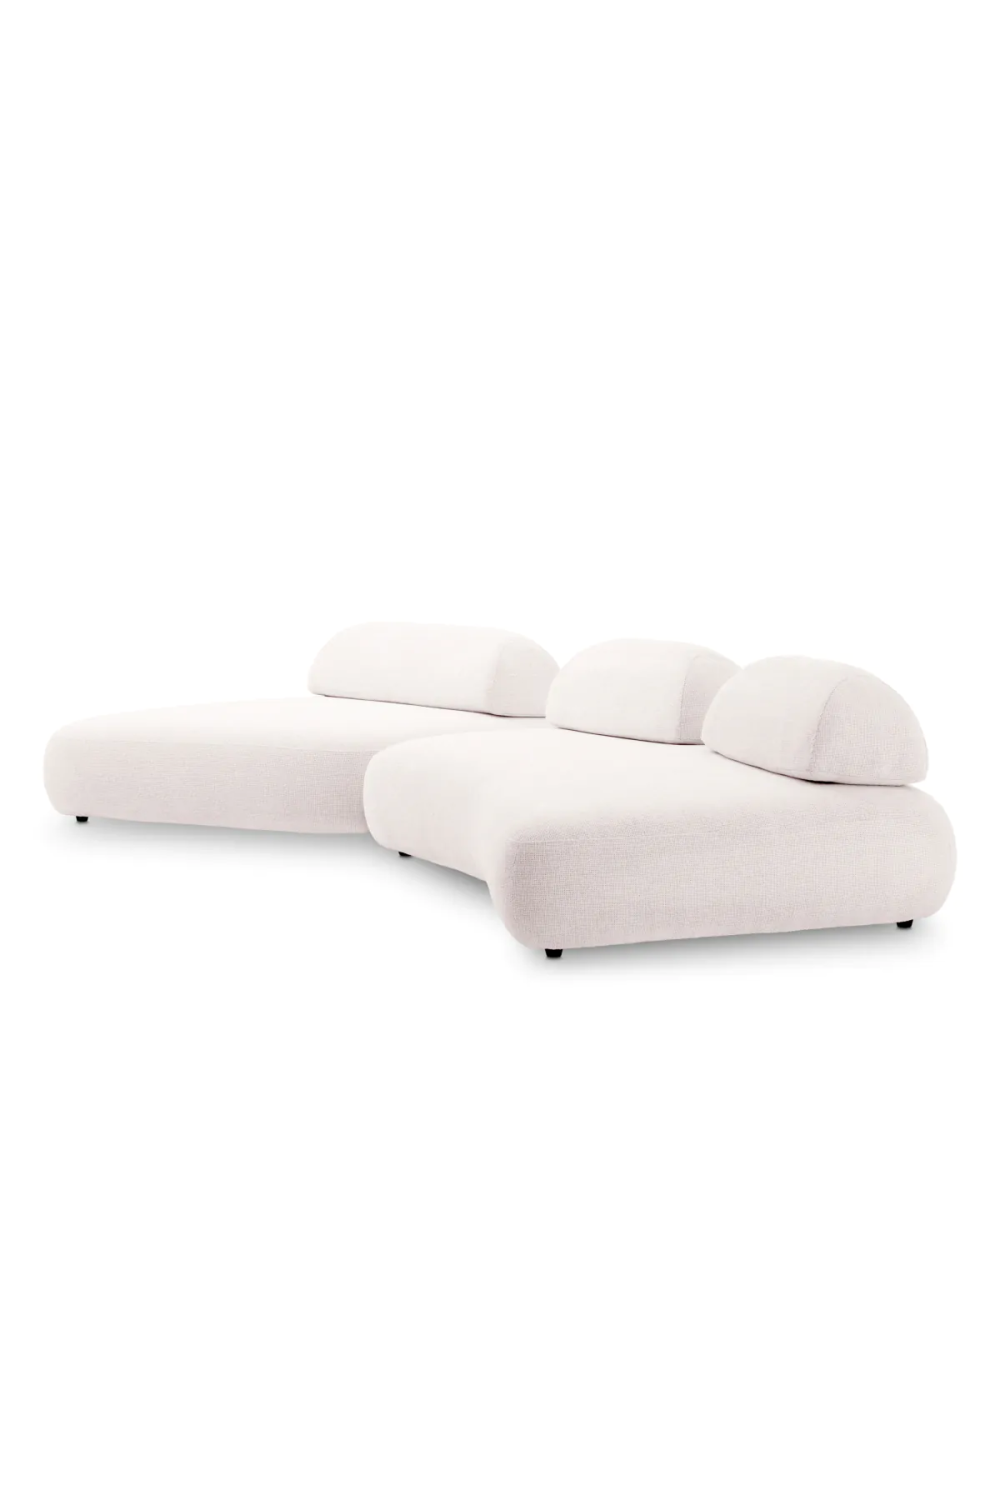 Image of Modern Modular Sofa | Eichholtz Residenza